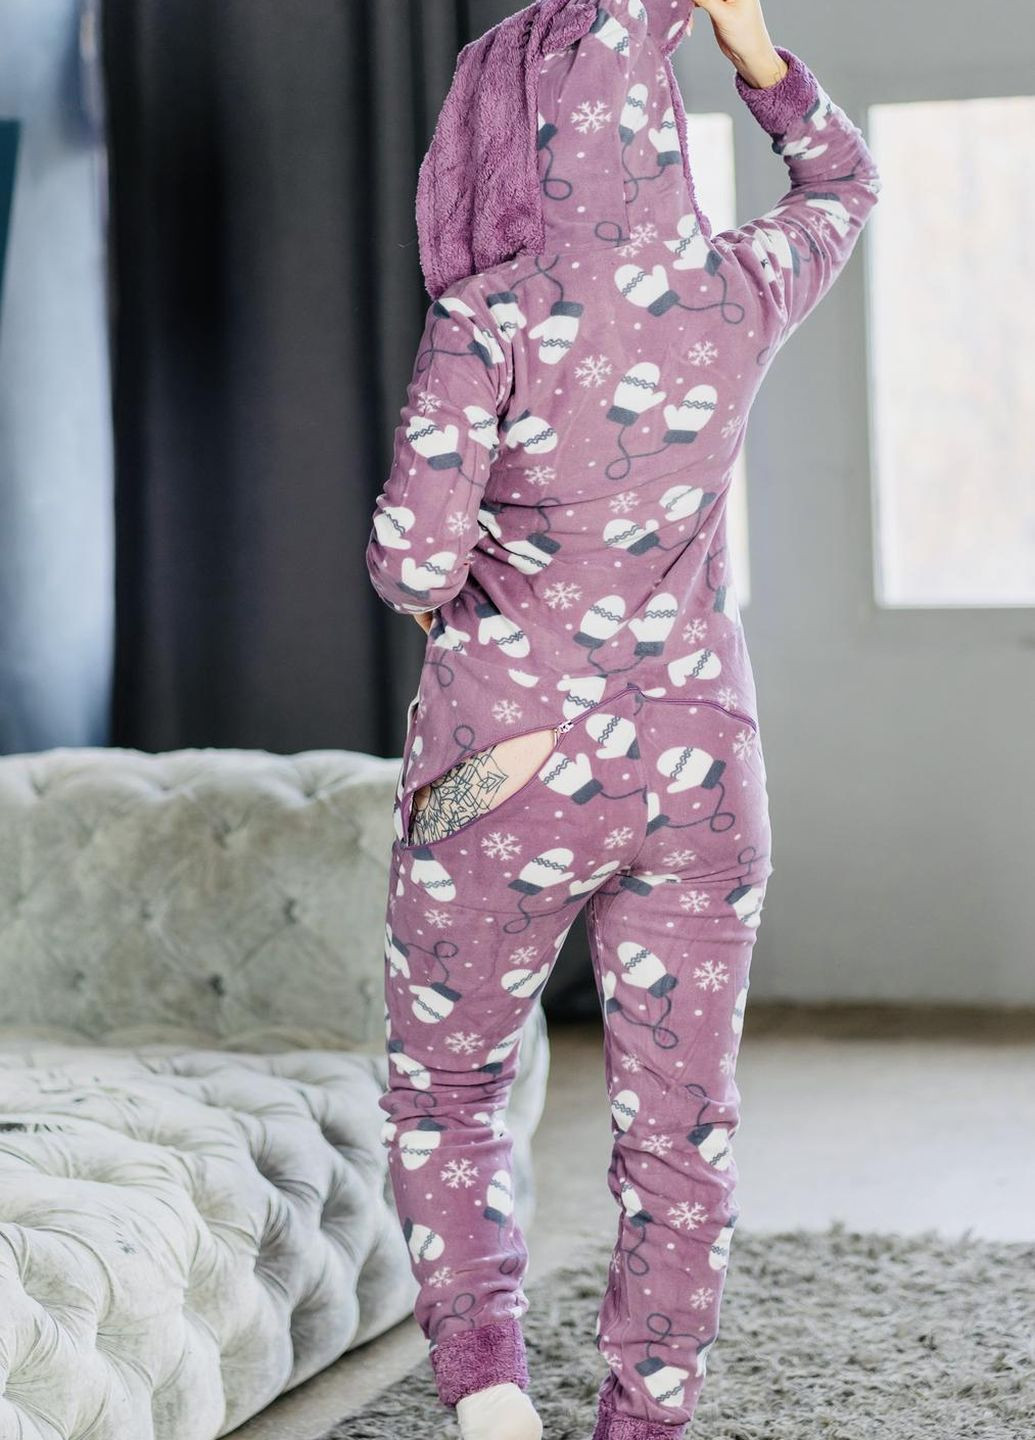 Светло-фиолетовая зимняя пижама комбинезон Pijamoni Попожама рукавичка (комбінезон з карманом на попі, піджамоні) - кигурумі